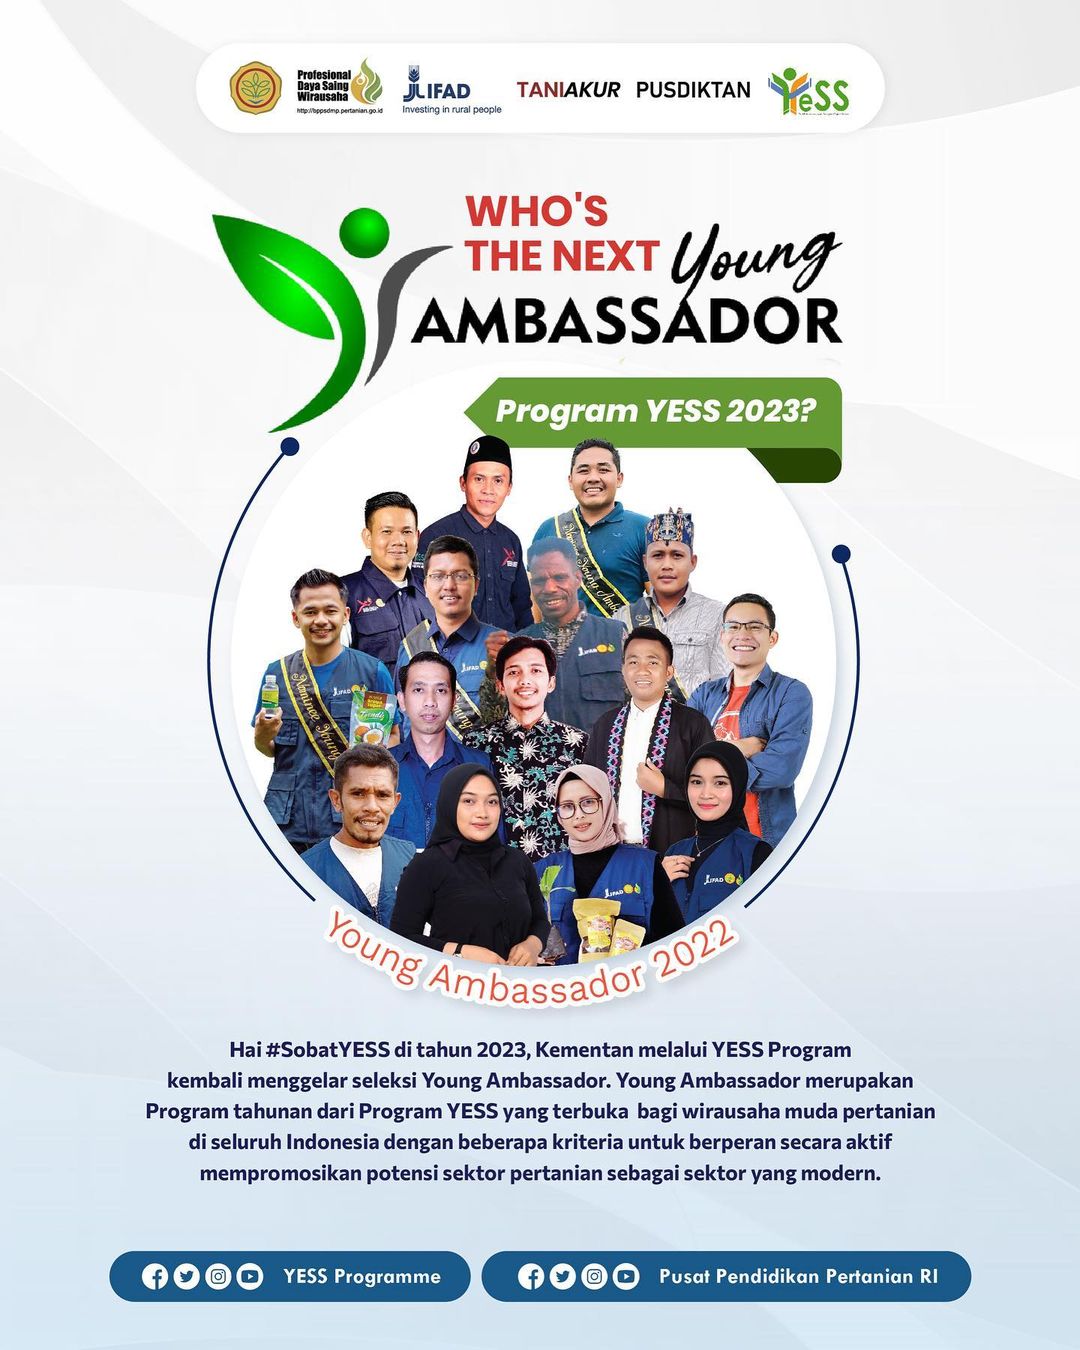 Galeri - Infografis, Who's The Next Young Ambassador Program YESS 2023?, Young Ambassador 2023,BPPSDMP,Pusdiktan,Kementan,2023